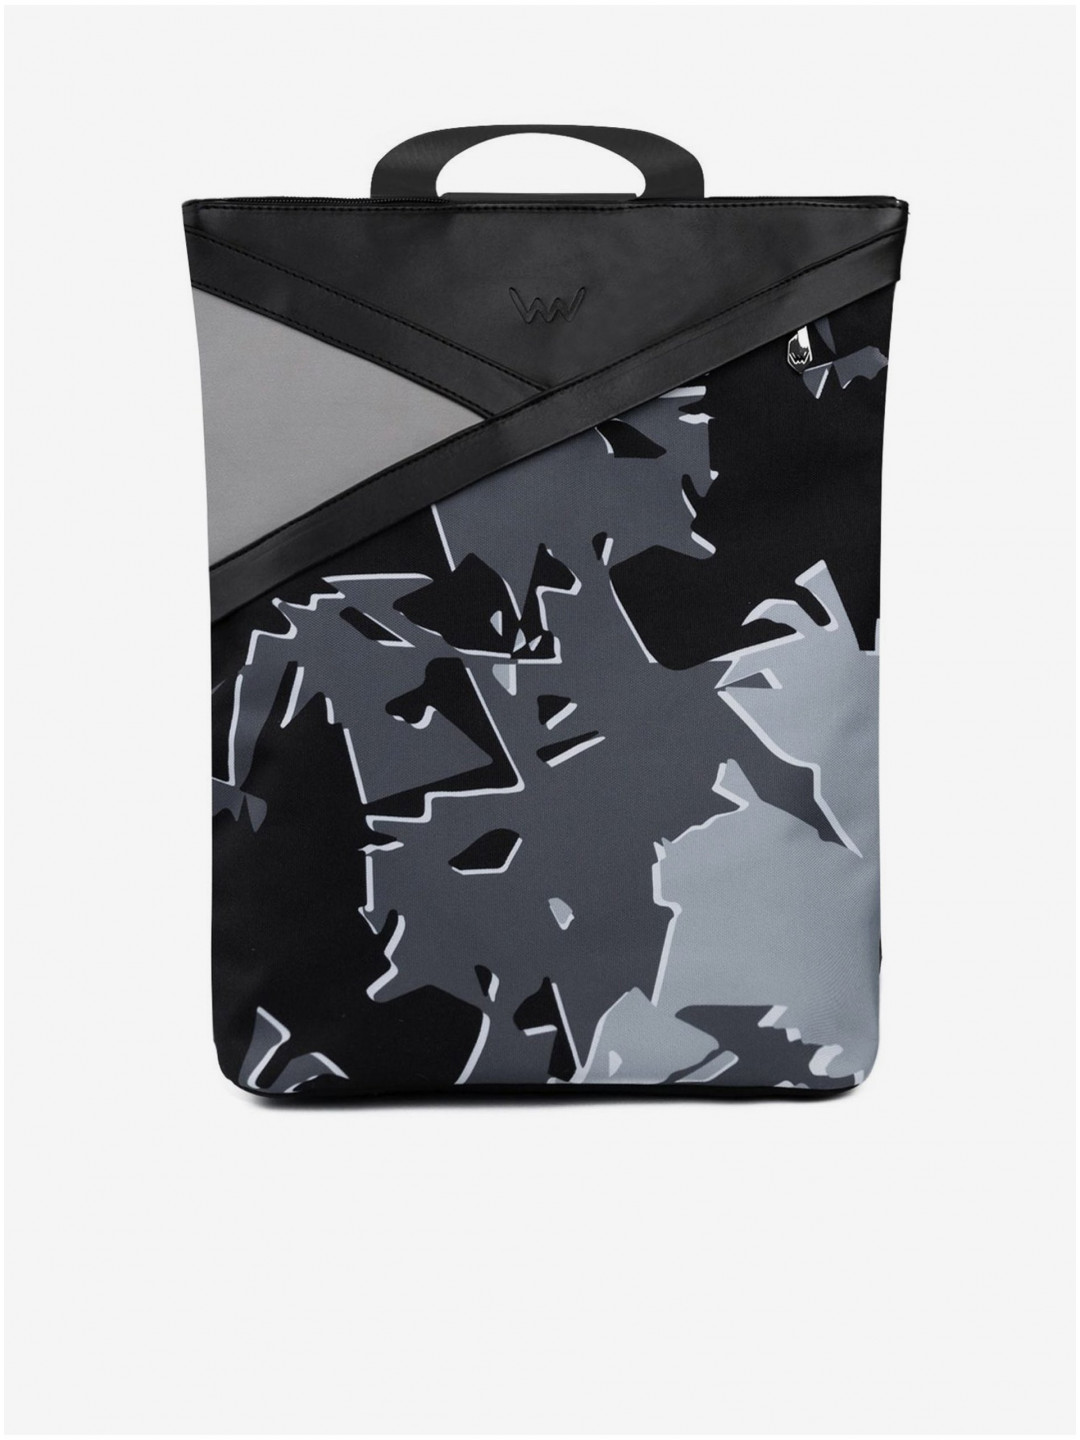 Černo-šedý dámský vzorovaný batoh VUCH Patsim